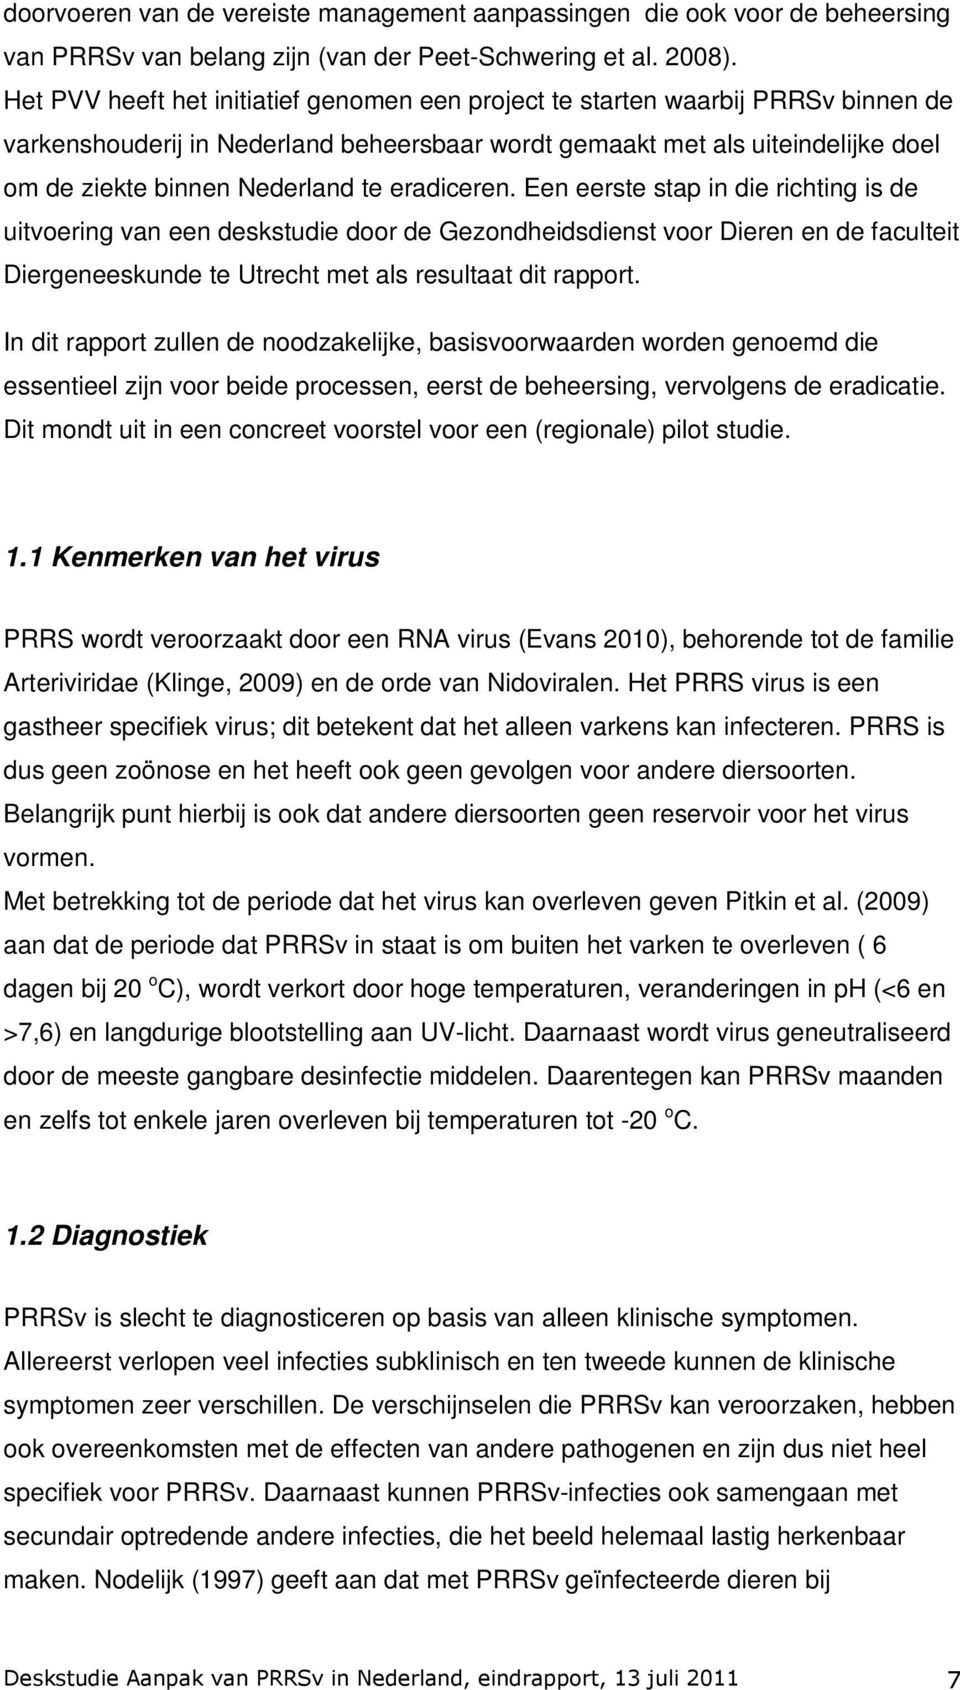 eradiceren. Een eerste stap in die richting is de uitvoering van een deskstudie door de Gezondheidsdienst voor Dieren en de faculteit Diergeneeskunde te Utrecht met als resultaat dit rapport.